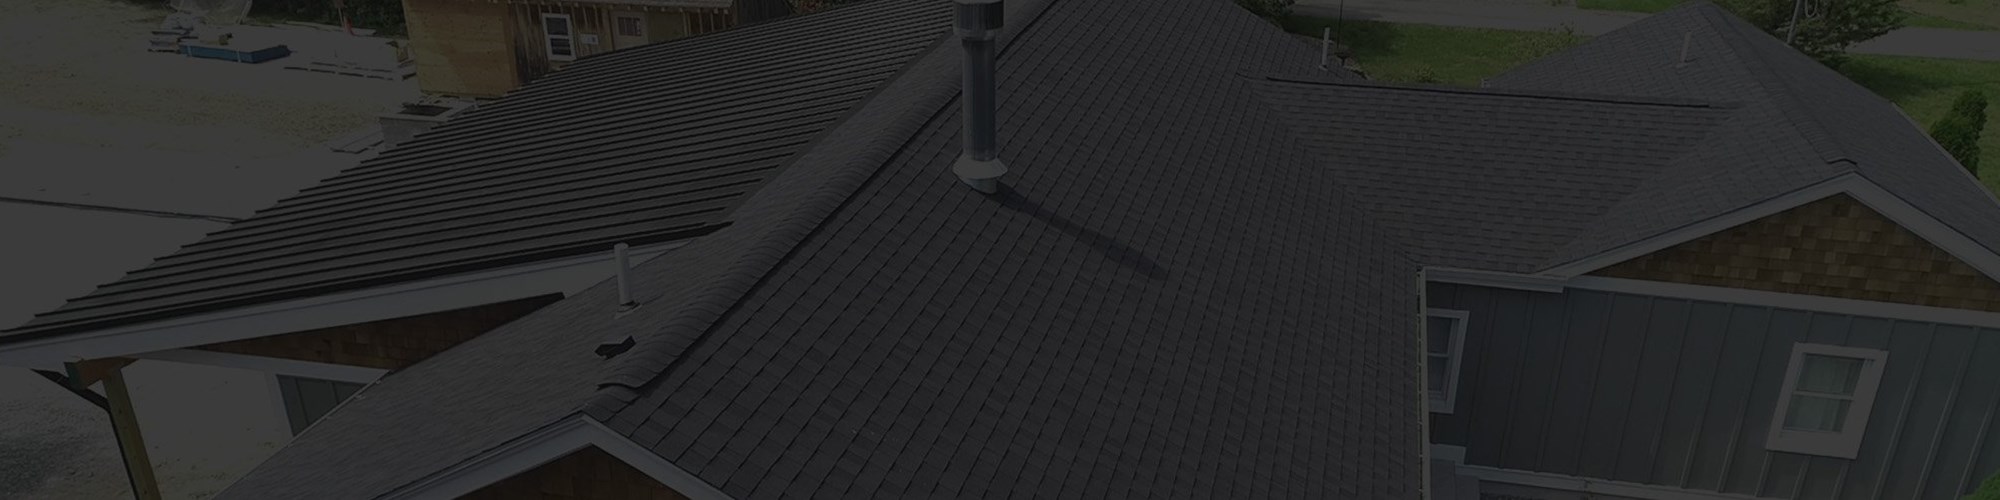 Residential roof in Massachusetts